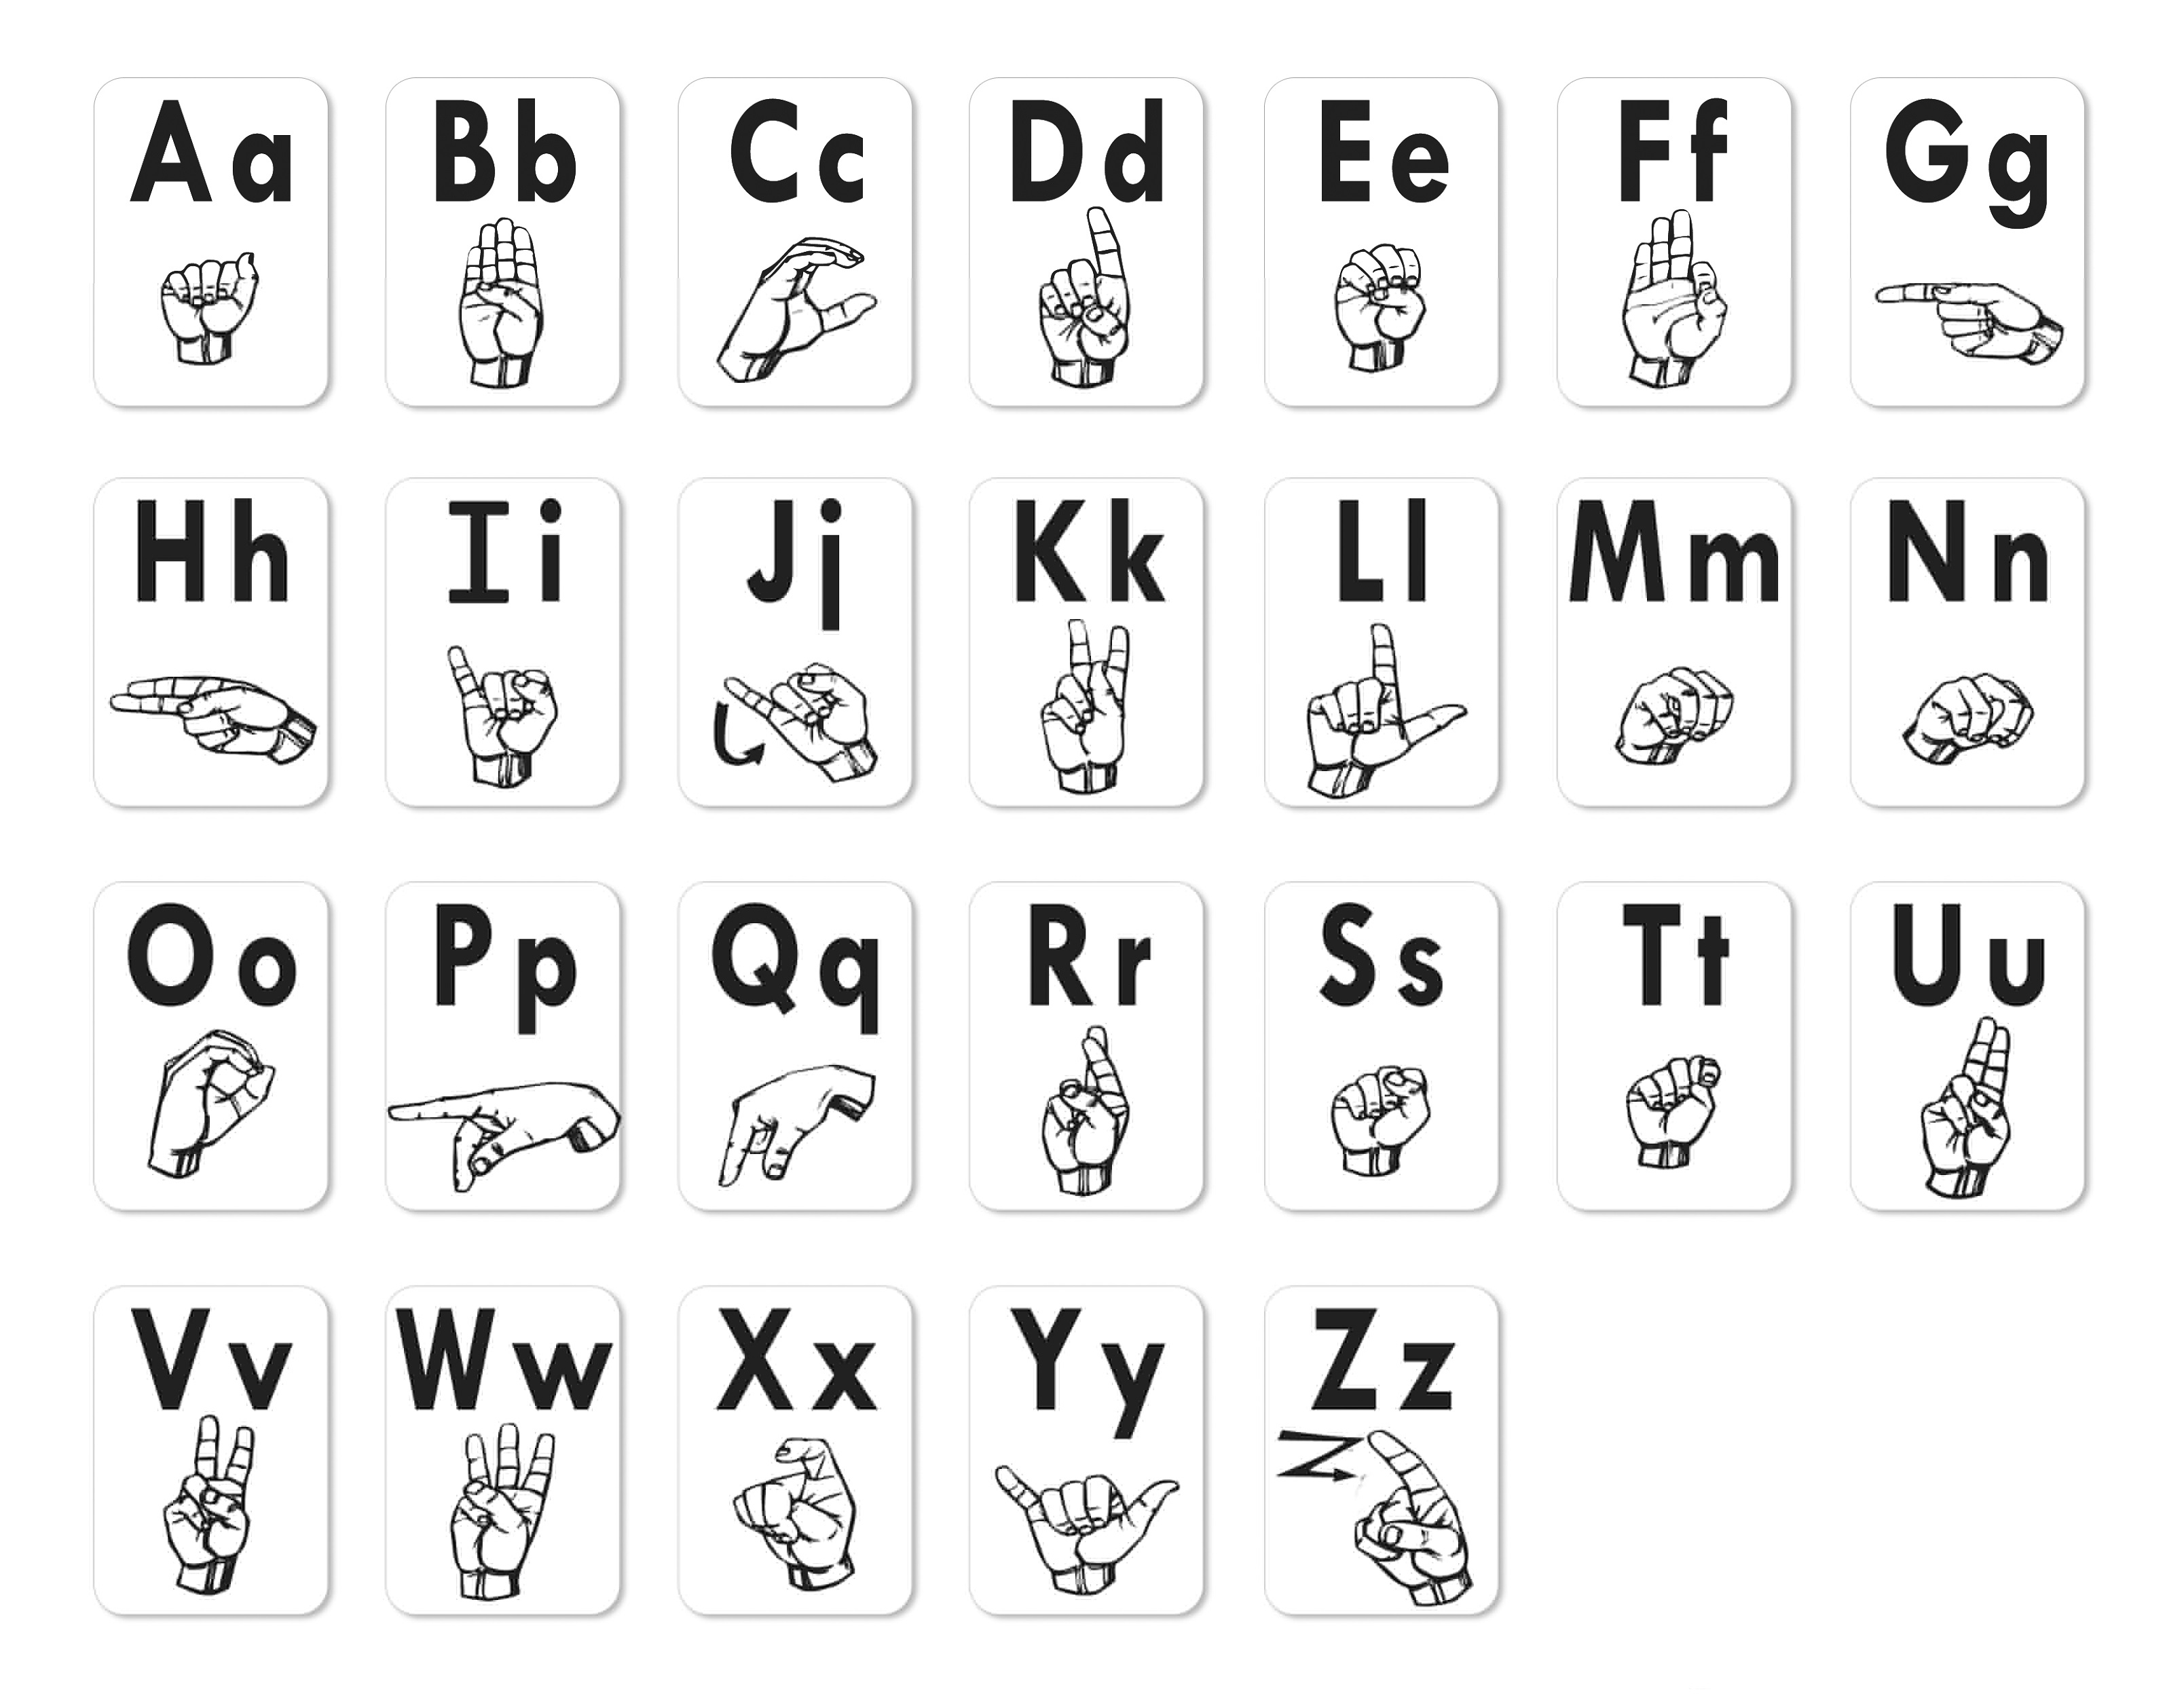 sign-language-chart-printable